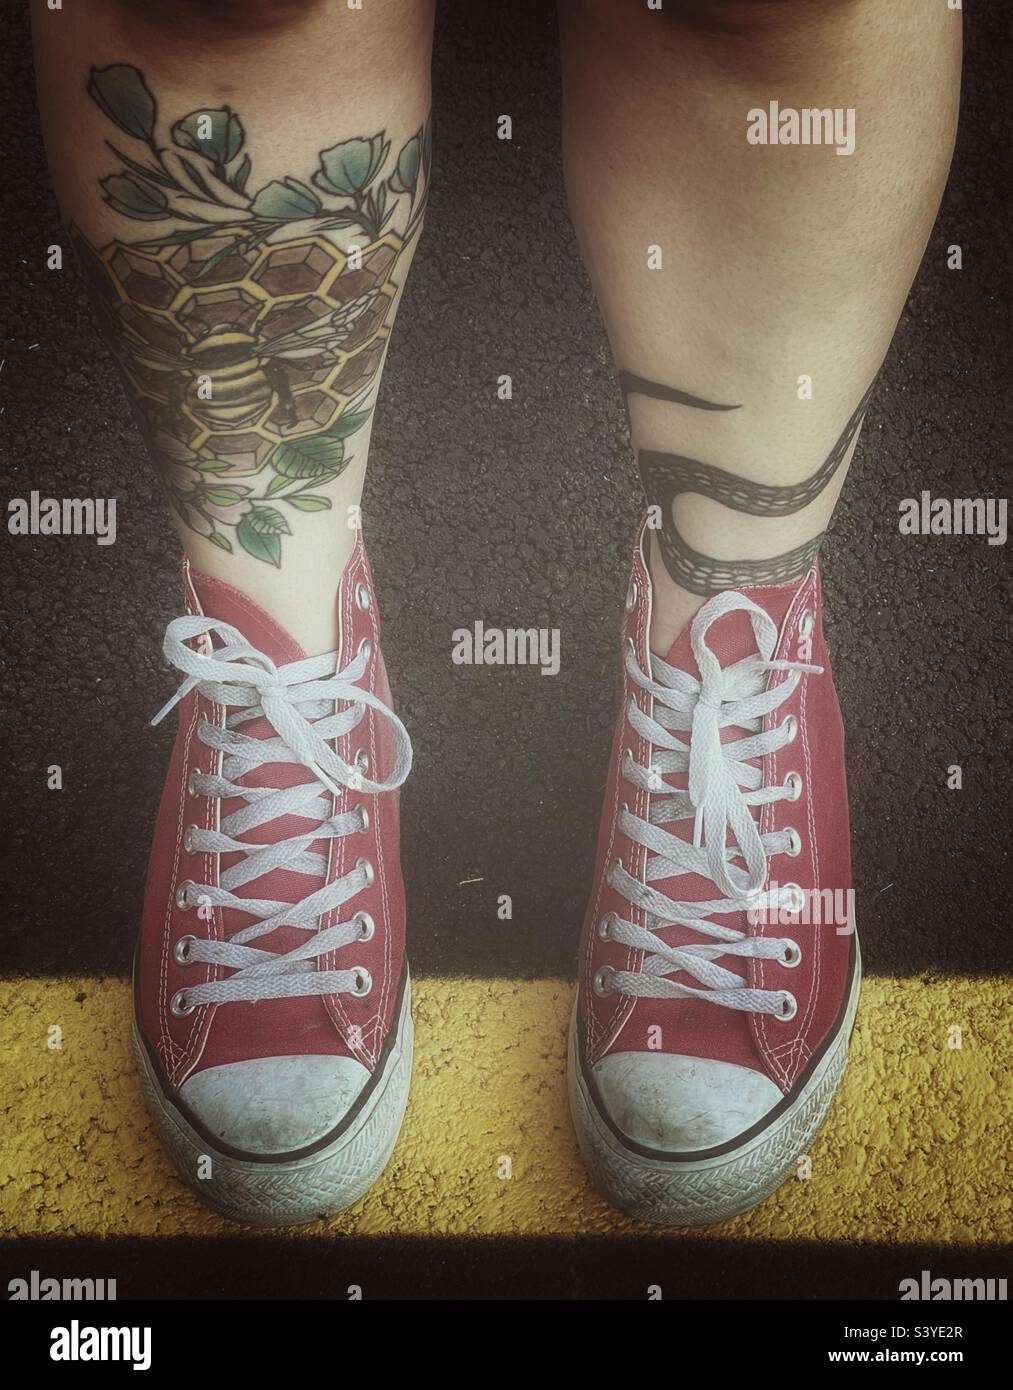 Piernas tatuadas de mujer joven y Chuck Taylor de corte alto rojo. Foto de stock